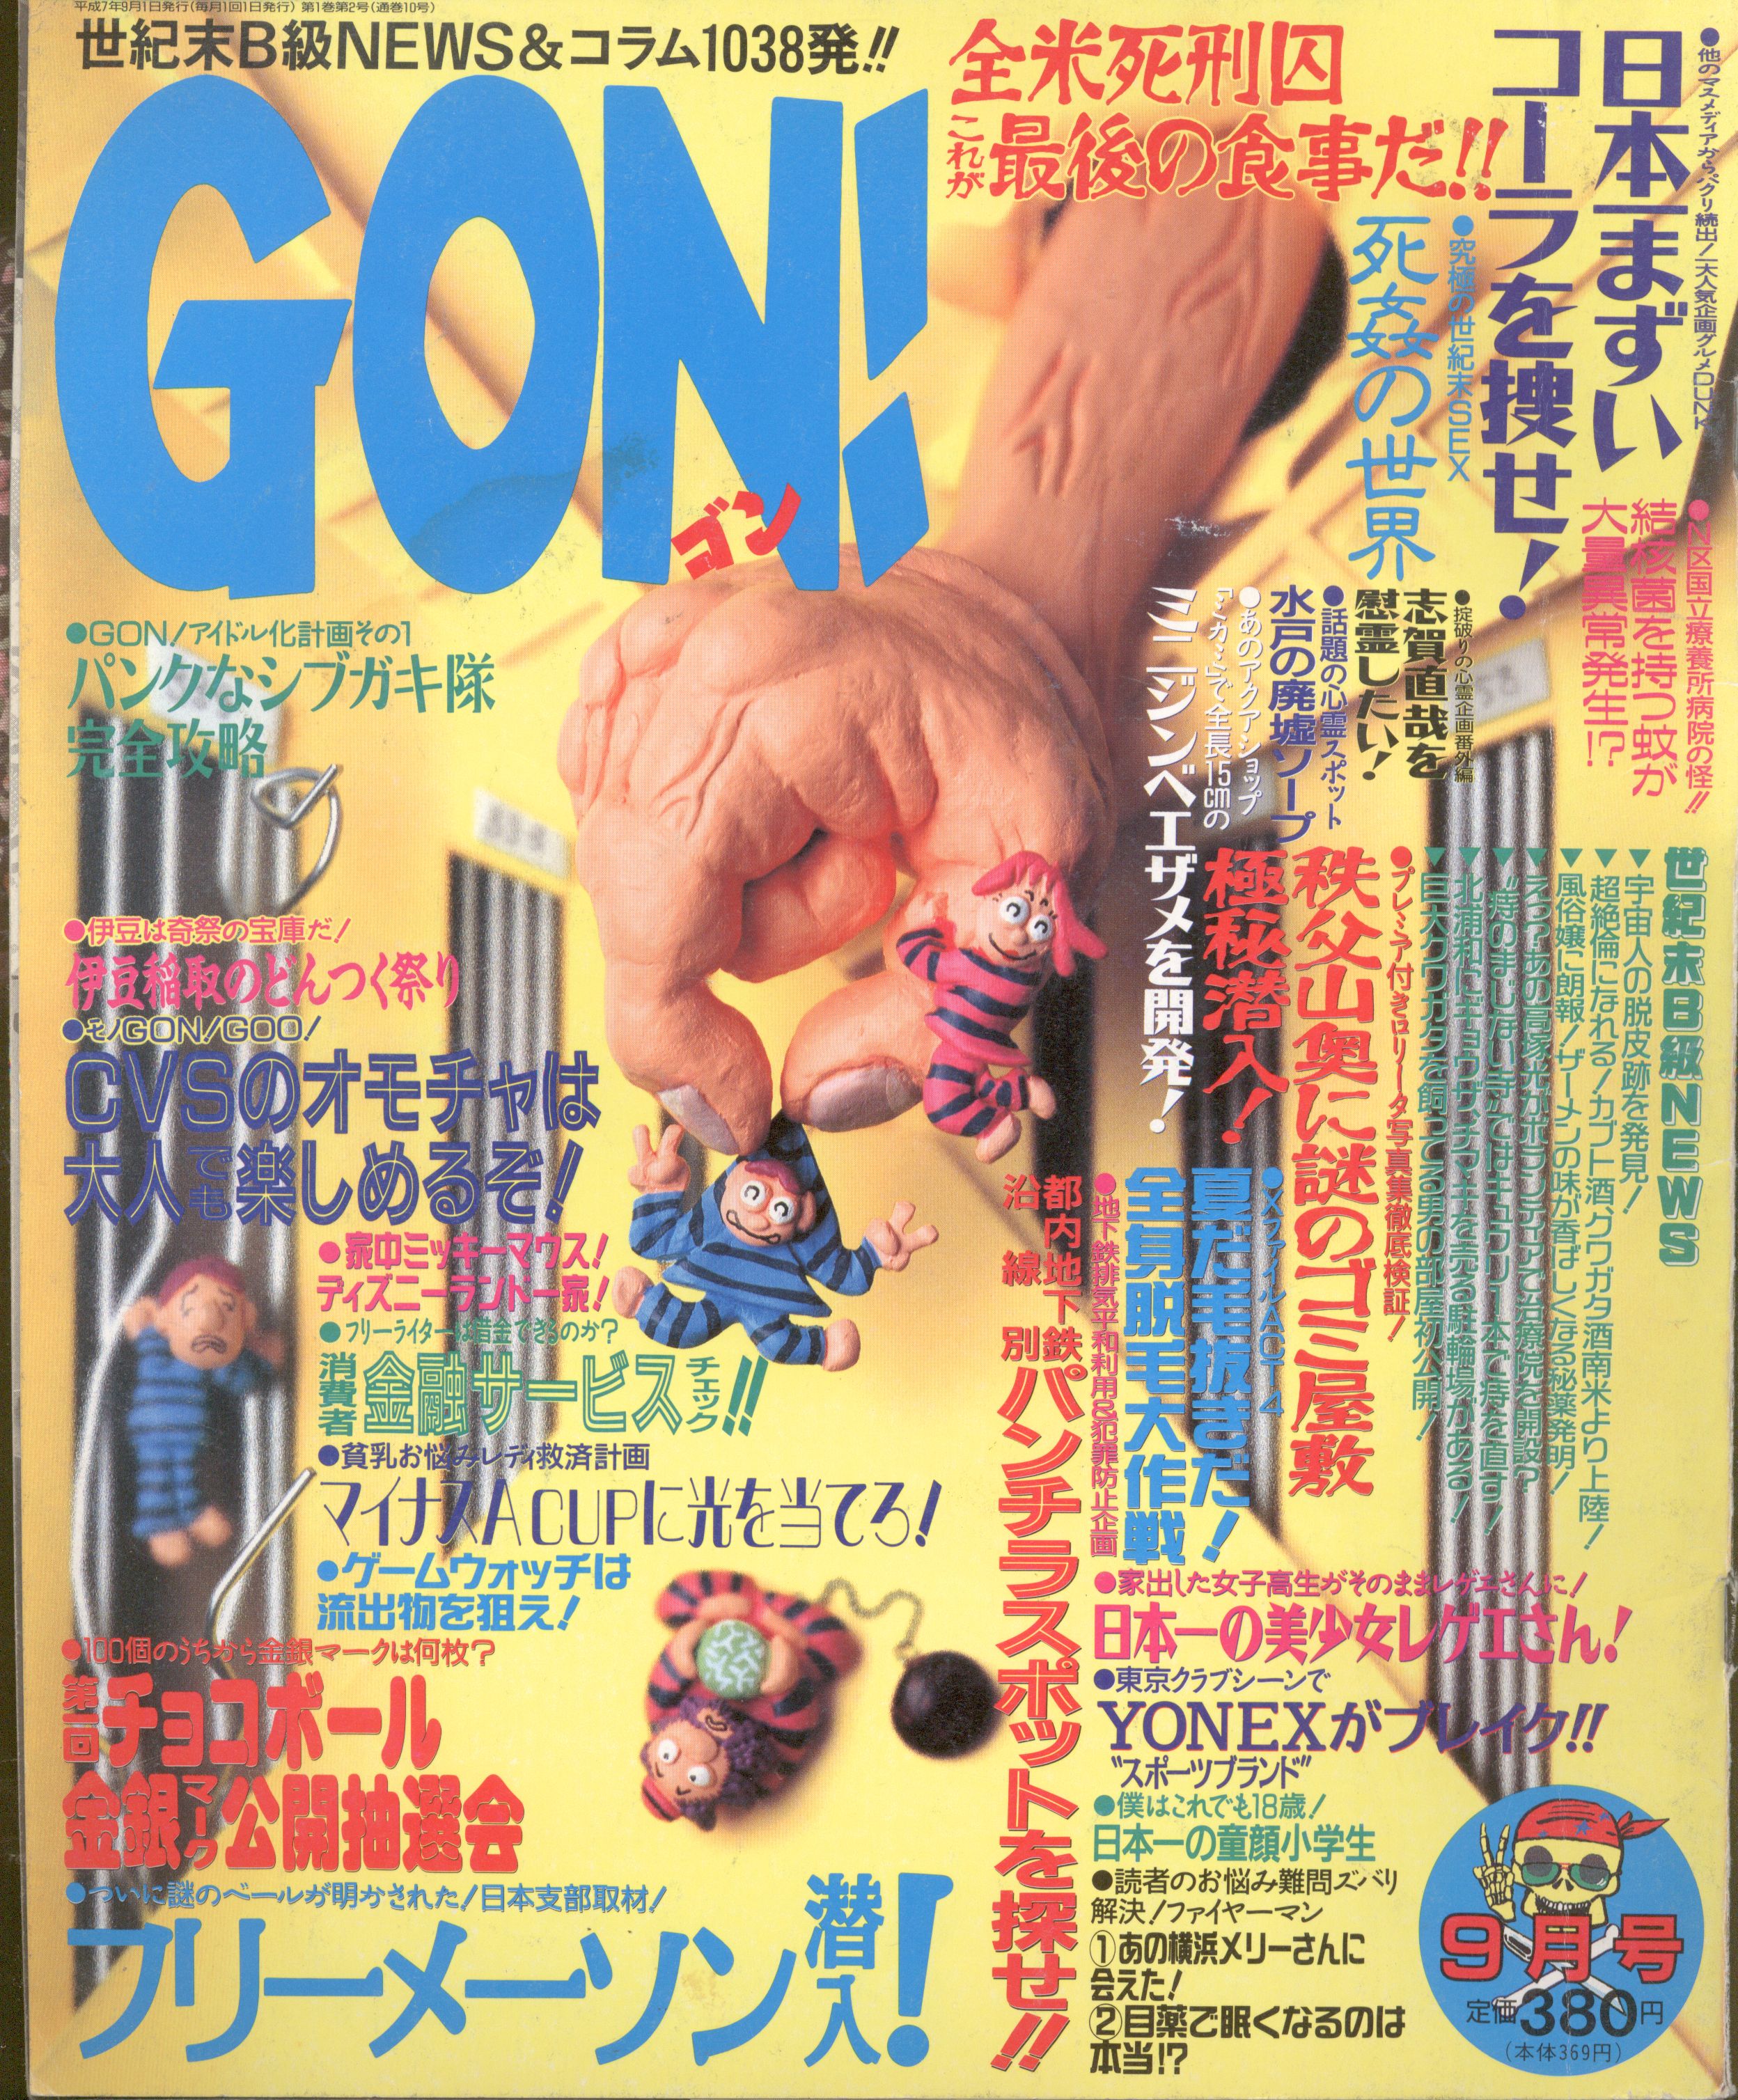 Super News Magazine Gon The September 1995 Issue Mandarake Online Shop